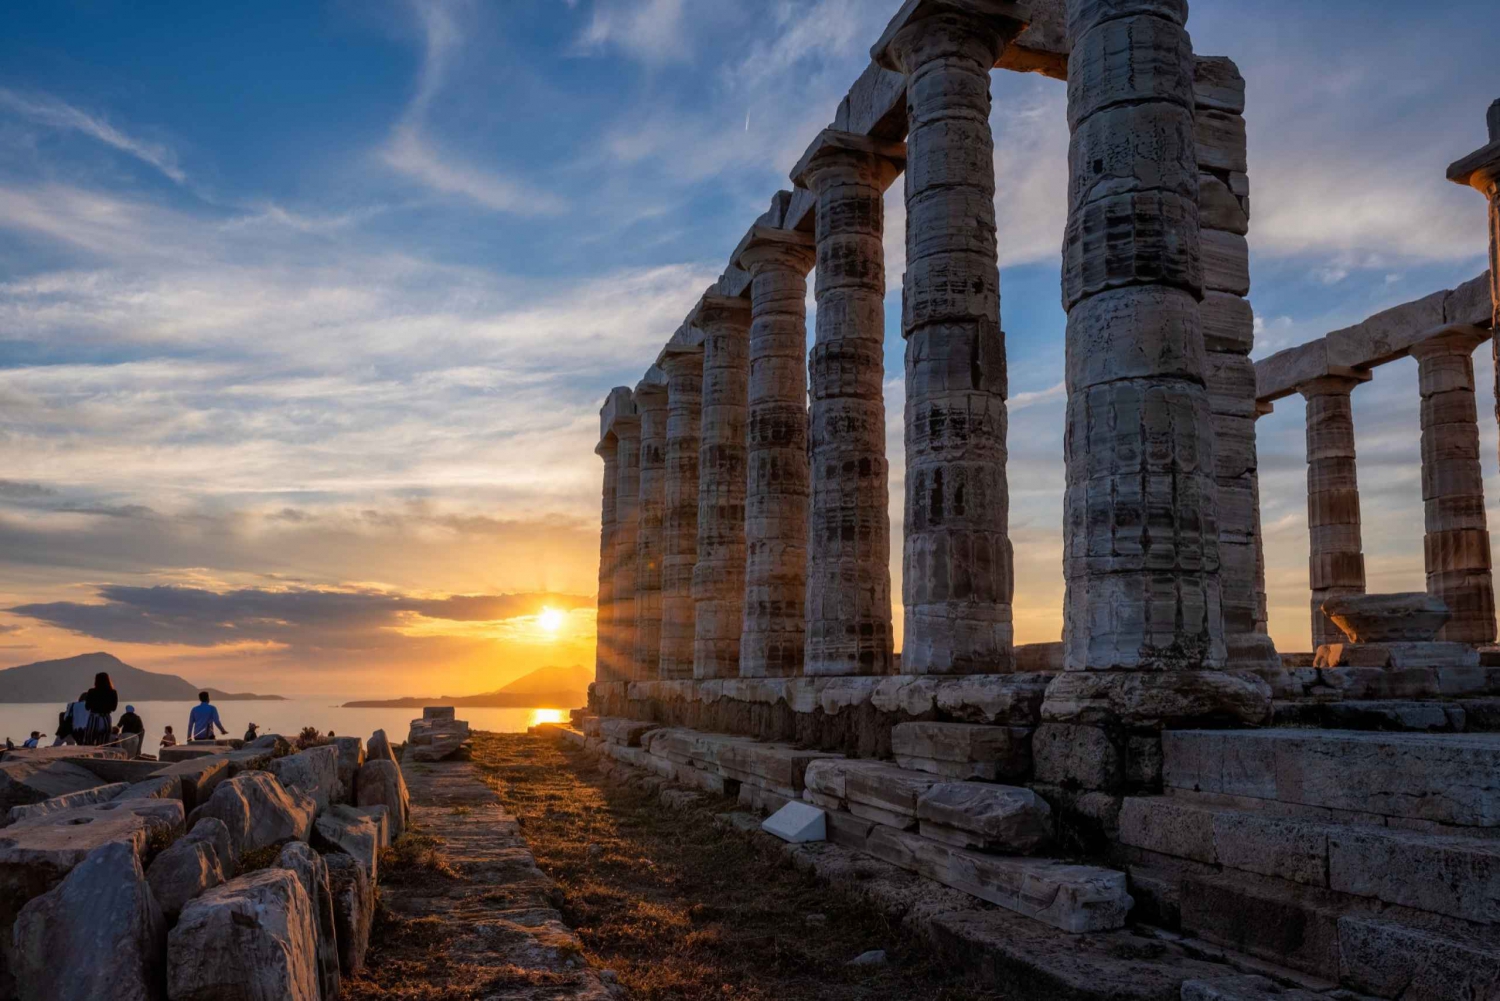 De Atenas: Excursão de meio dia ao Templo de Poseidon e ao Cabo Sounio